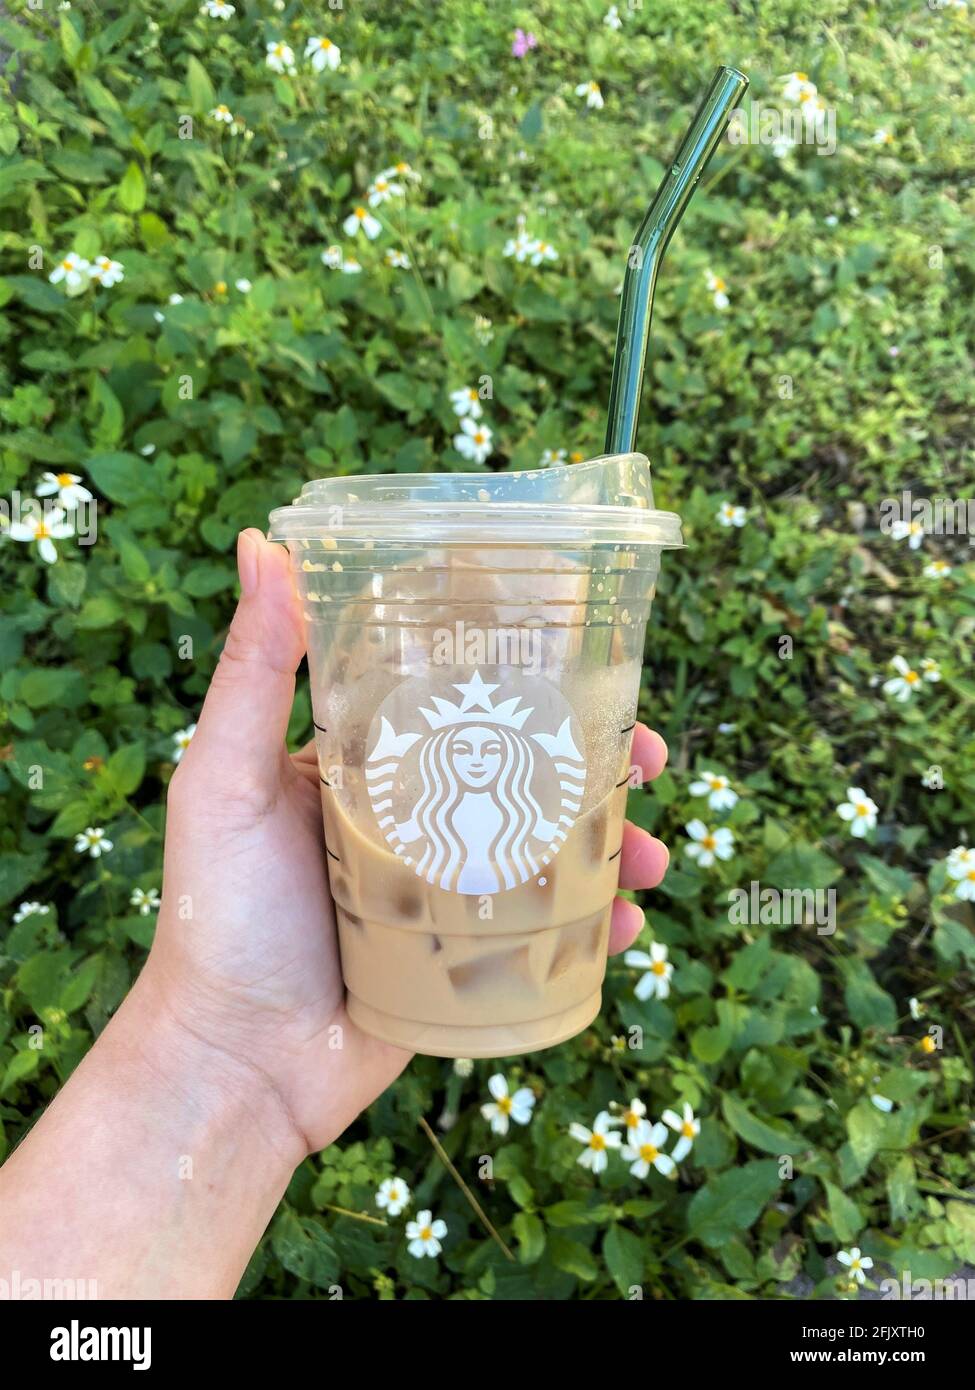 Tenir une paille en verre dans une tasse à café Starbucks afin de réduire  le besoin de pailles en plastique à usage unique en utilisant des pailles  réutilisables. Fond vert Photo Stock -